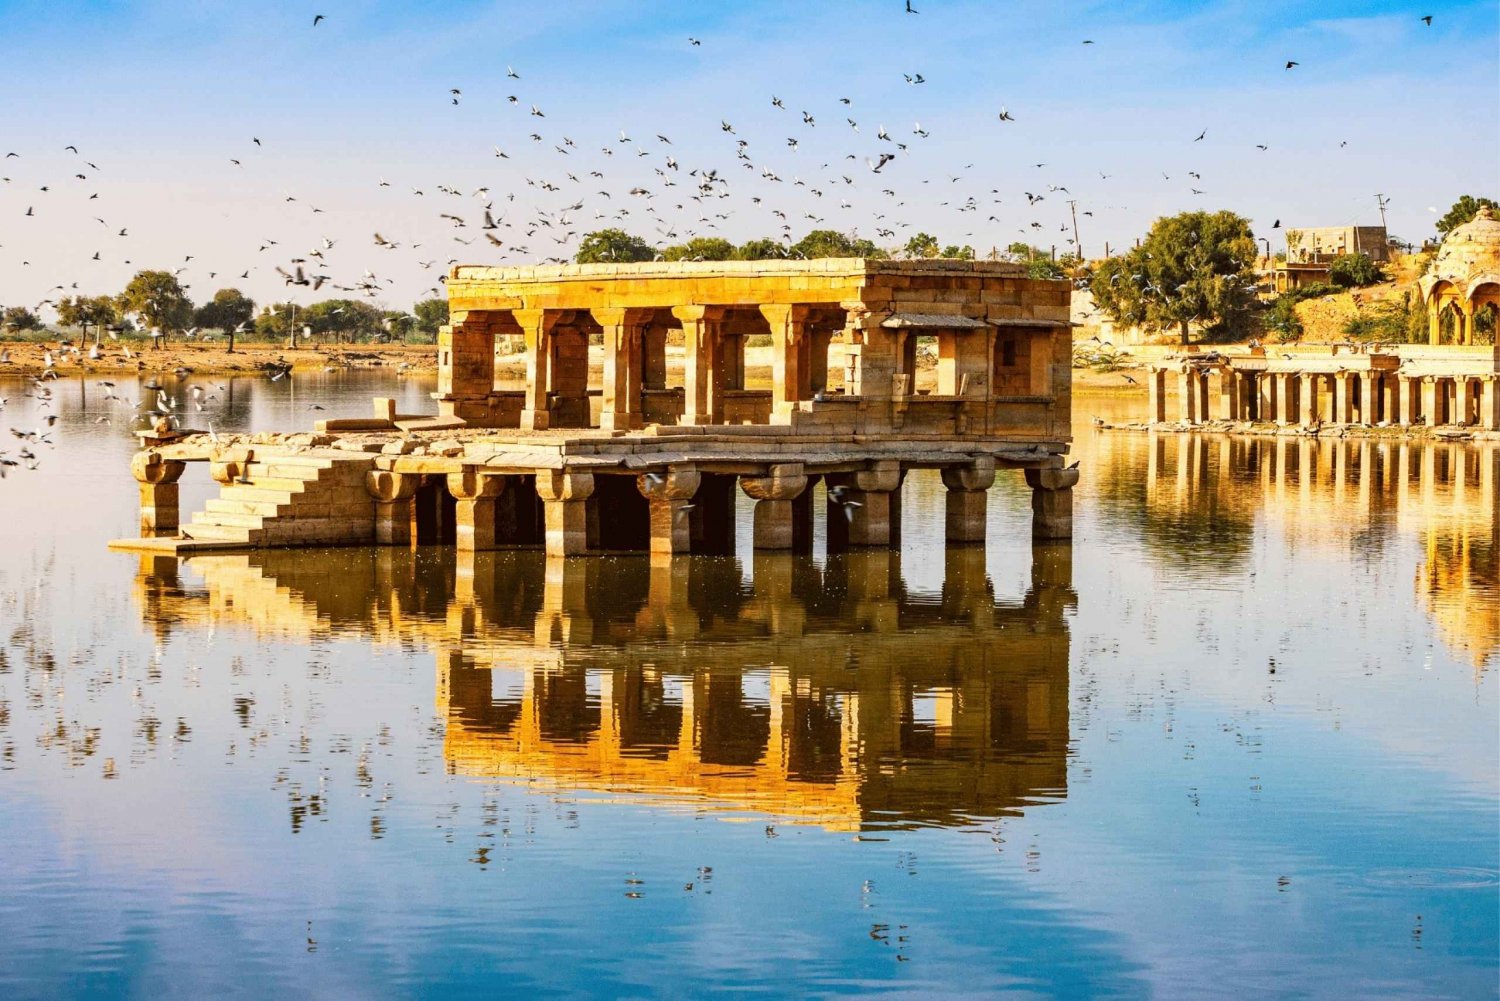 Excursão turística guiada de dia inteiro pelo melhor de Jaisalmer de carro